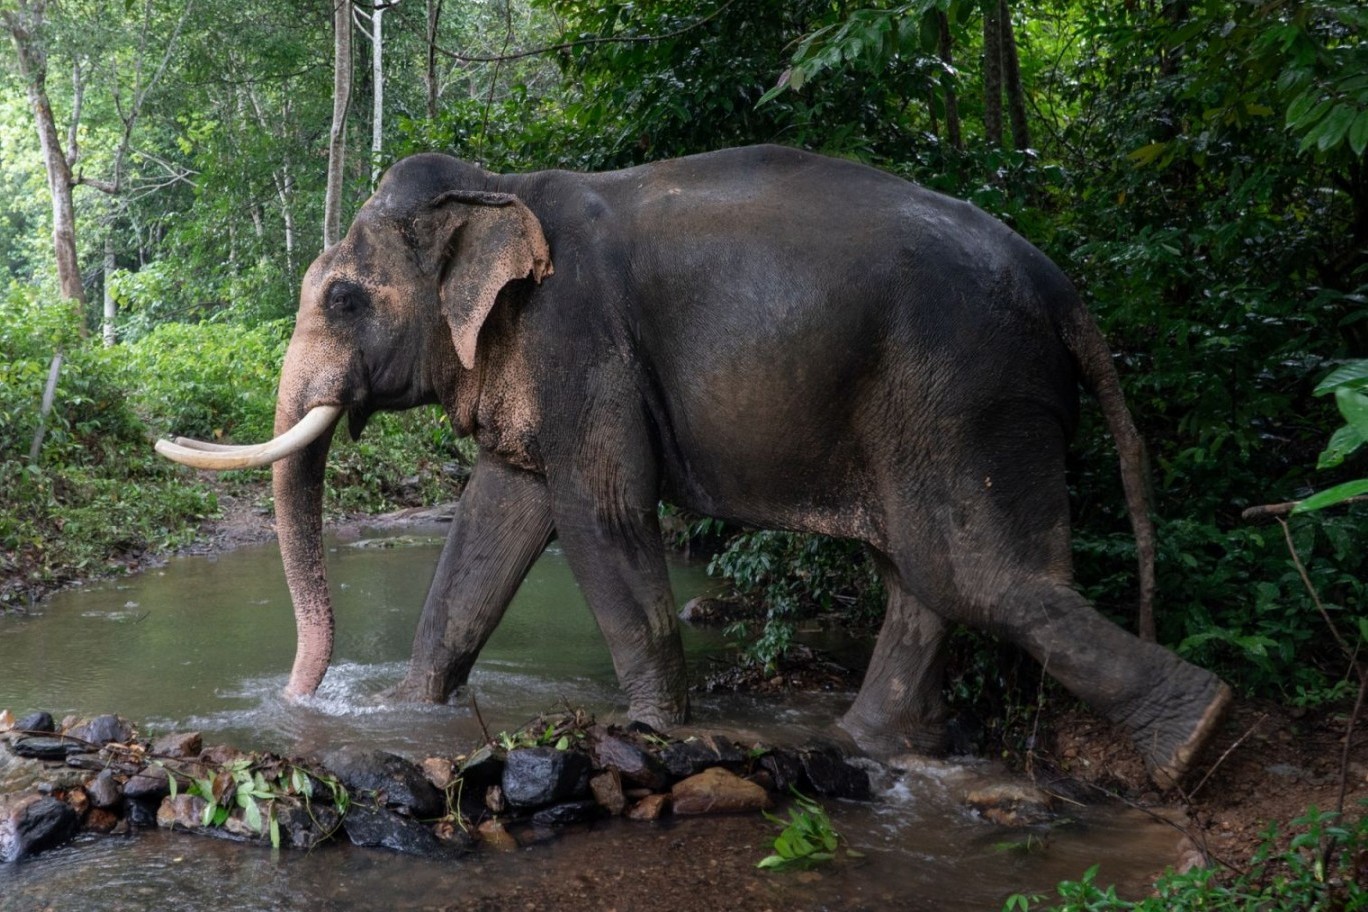 elephant walks through water at a high welfare venue in koh lanta thailand